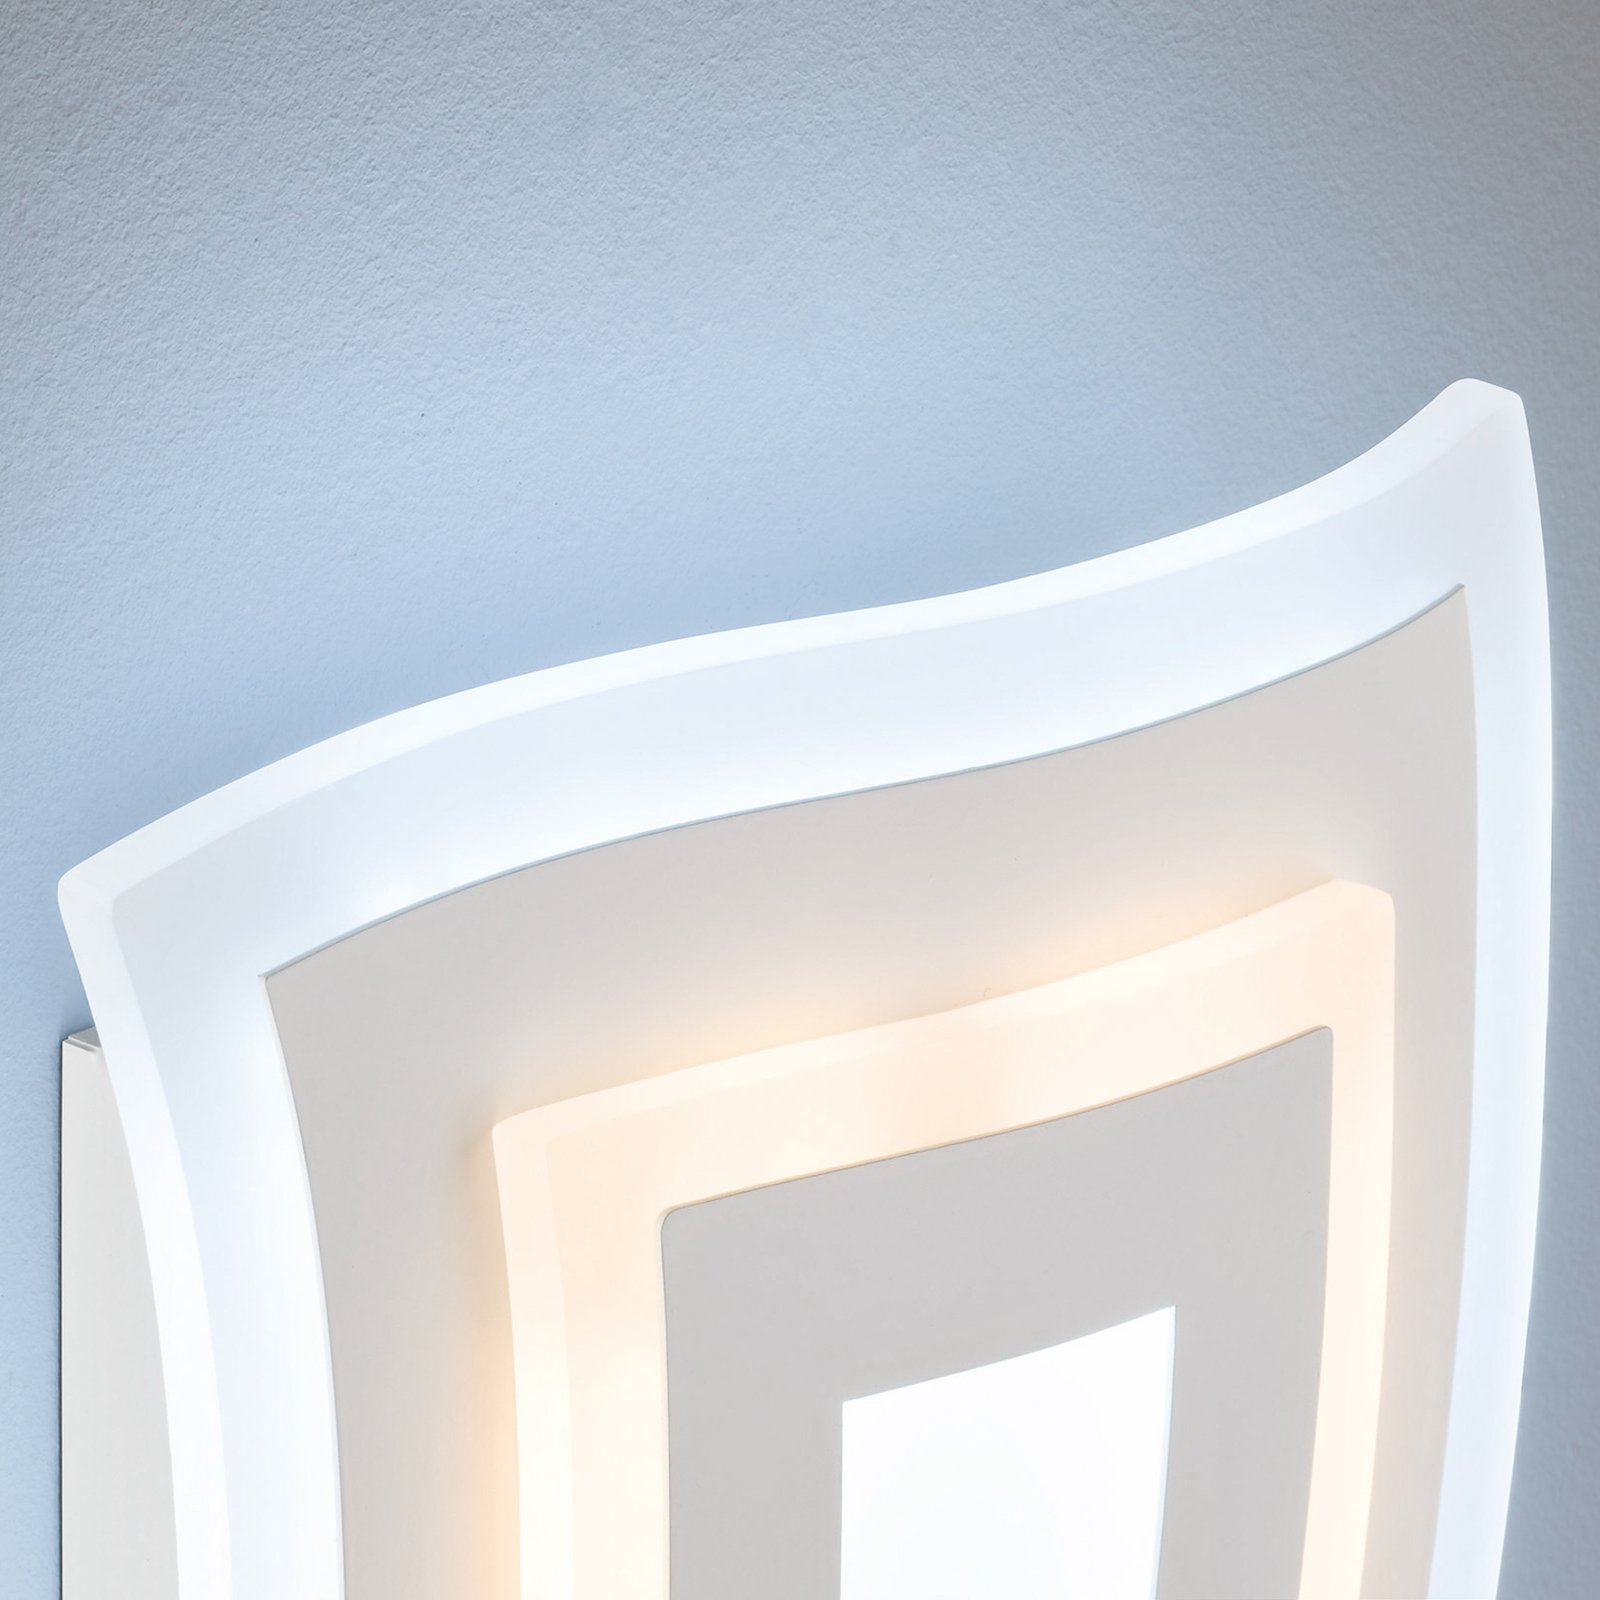 Gorden LED wall light, white, height 43 cm, metal, CCT